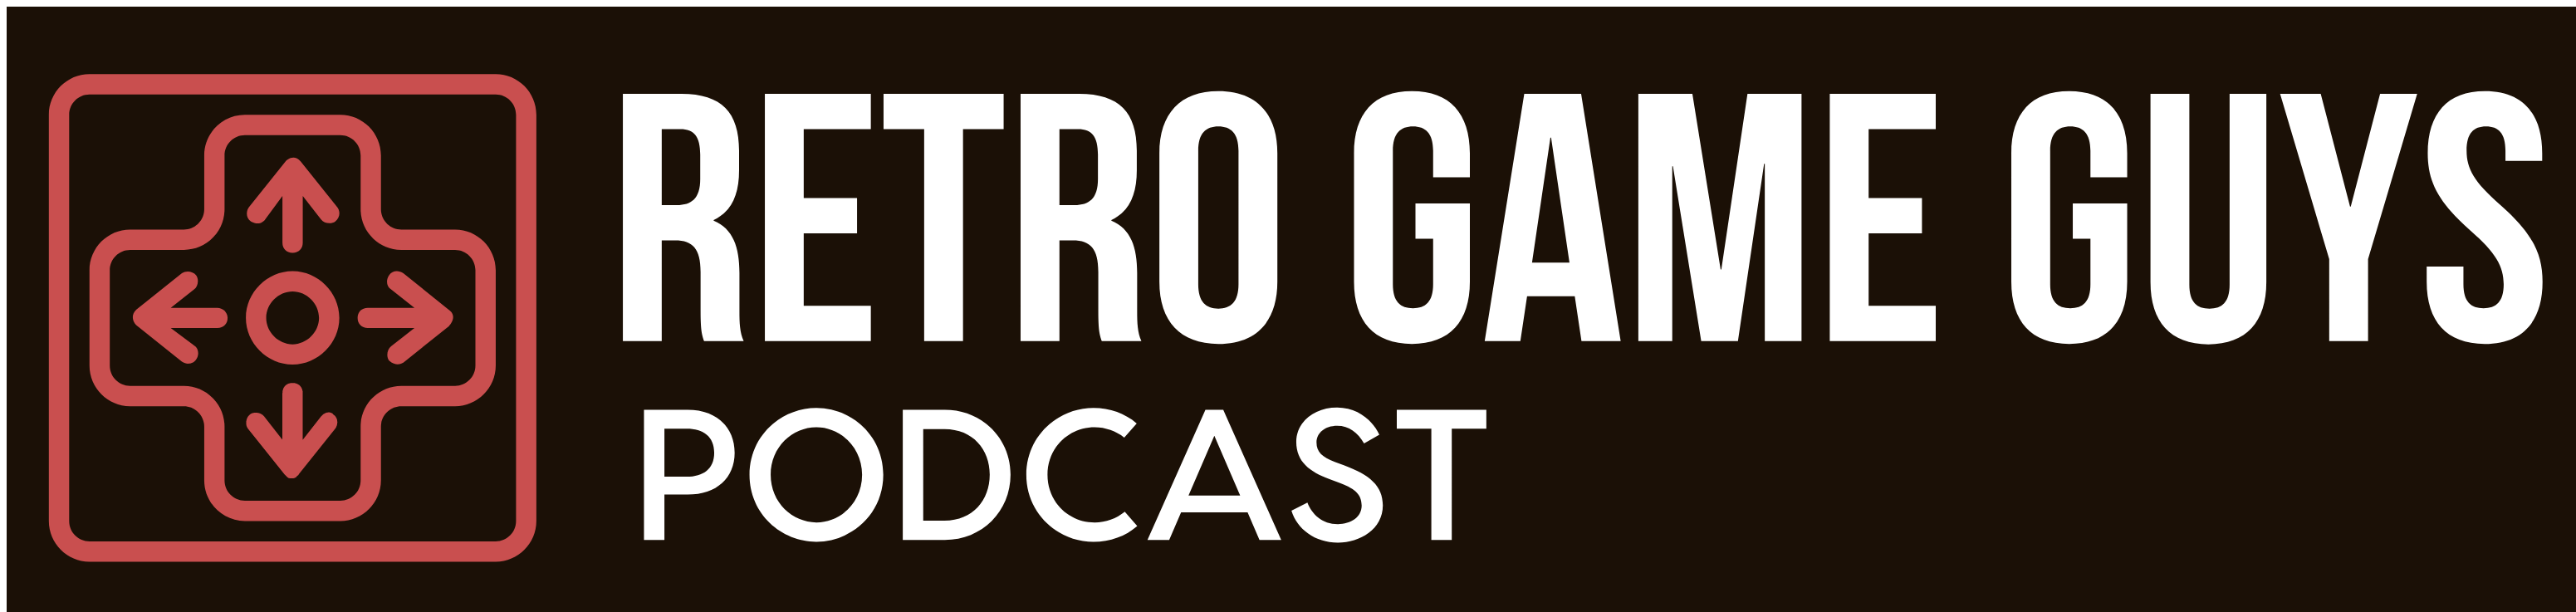 Retro Game Guys (A Retro Gaming Podcast)